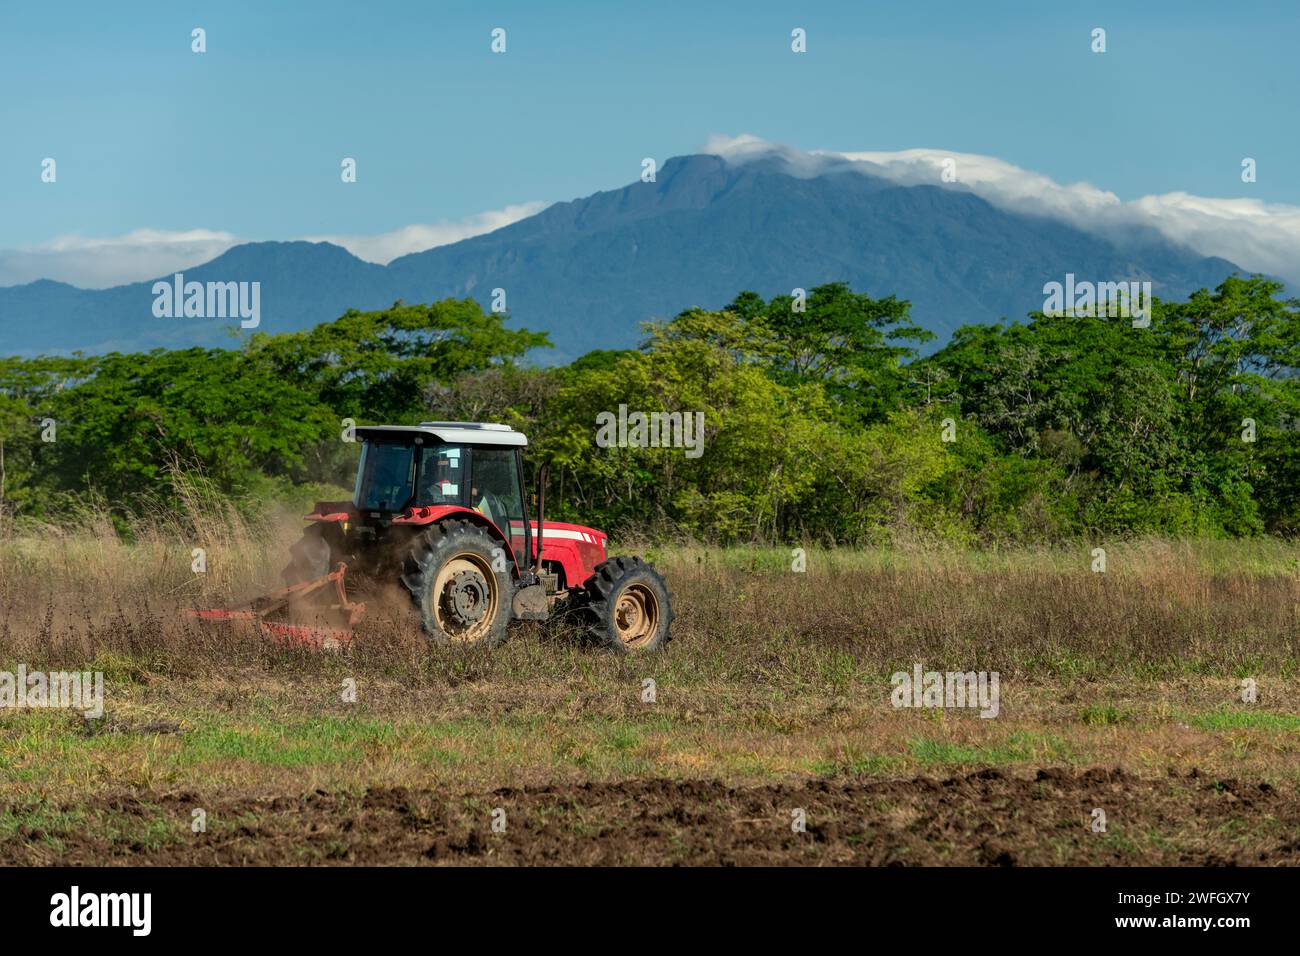 Cielo blu sopra il trattore arando un campo con il vulcano Baru sullo sfondo, Chiriqui, Panama, America centrale - foto stock Foto Stock